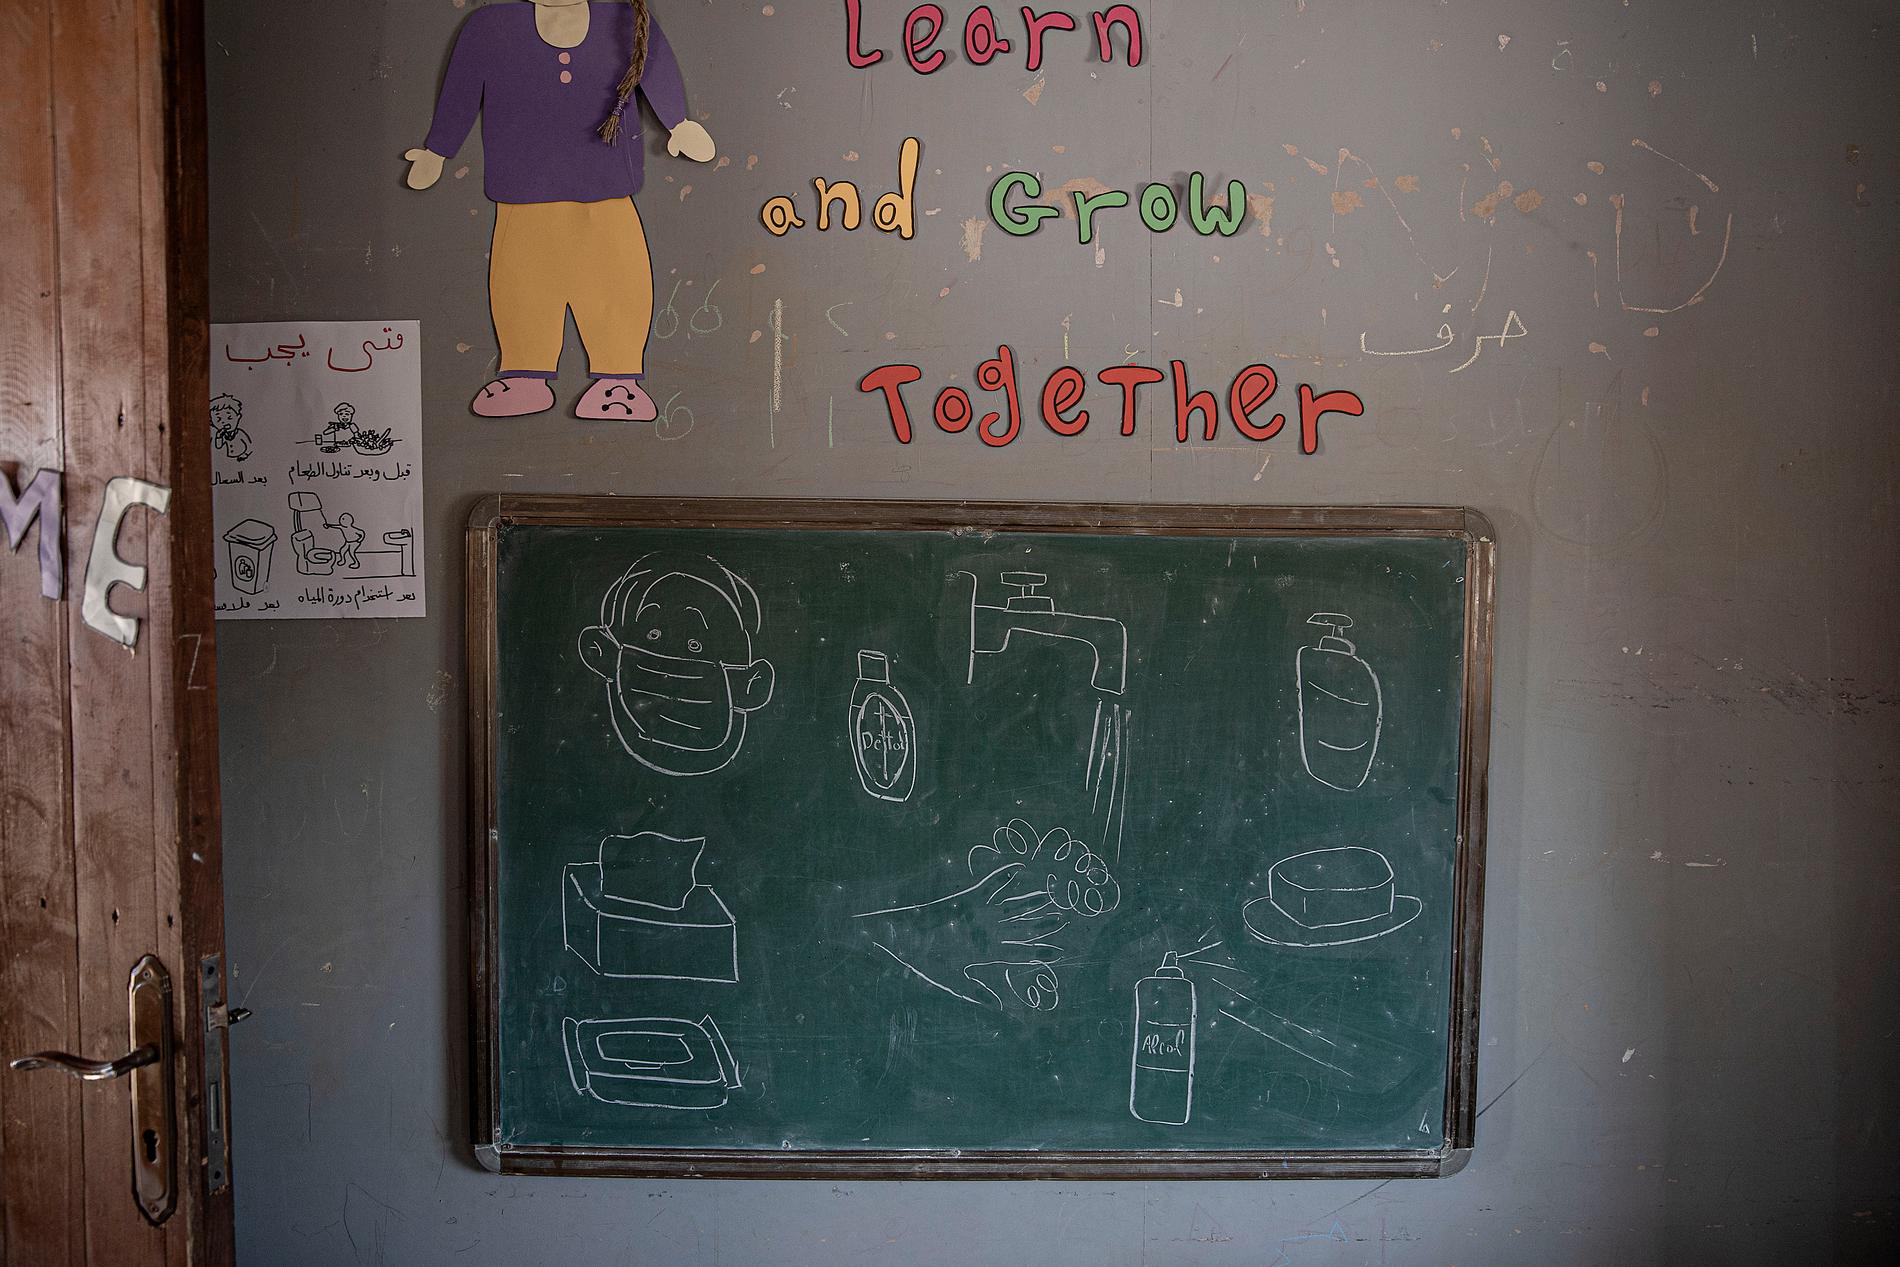 En tavla i klassrummet med teckningar på bland annat ett par händer som tvättas och munskydd.